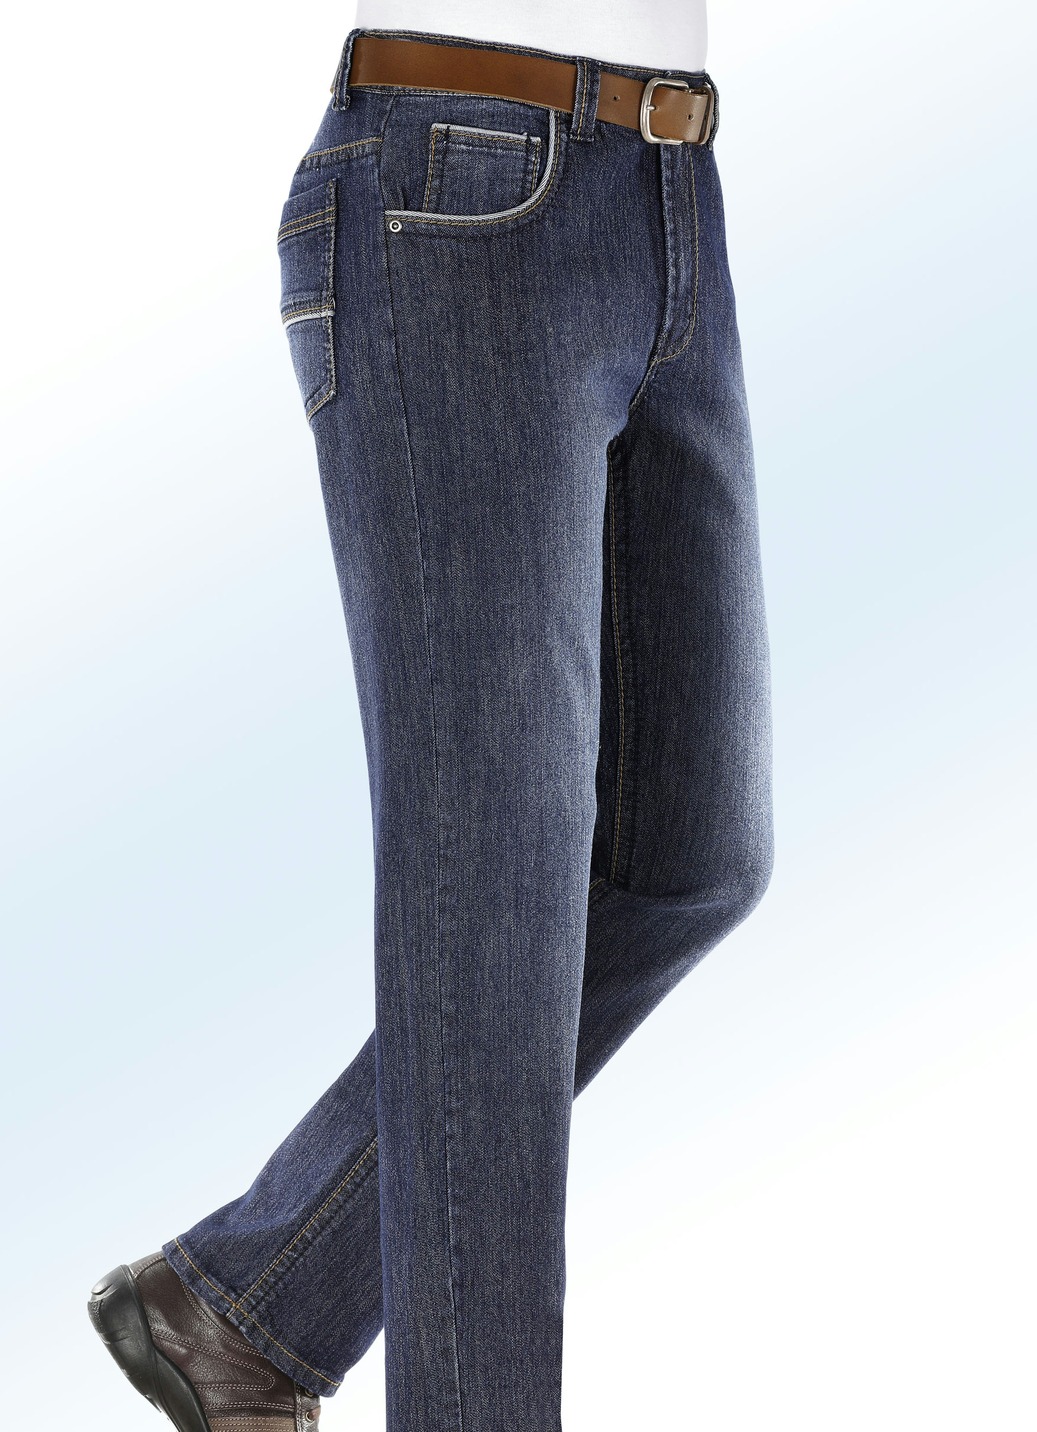 Jeans mit modischen Details in 3 Farben, Jeansblau, Größe 60 von BADER